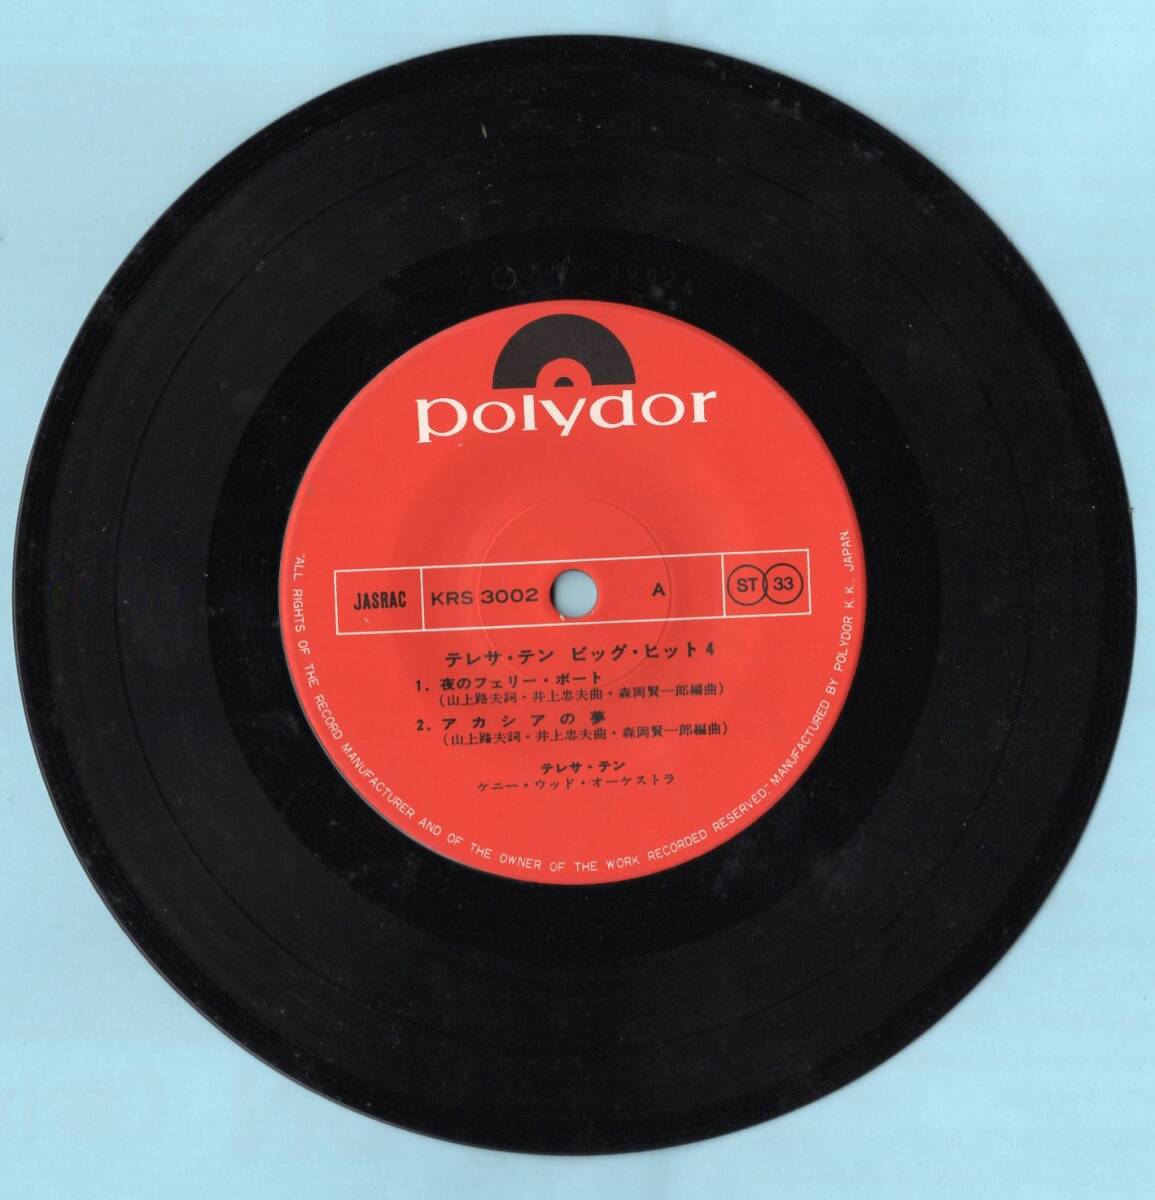 1976年昭和51年 テレサ・テン 4曲収録レコード KRS3002 和モノ? 昭和歌謡 _画像5